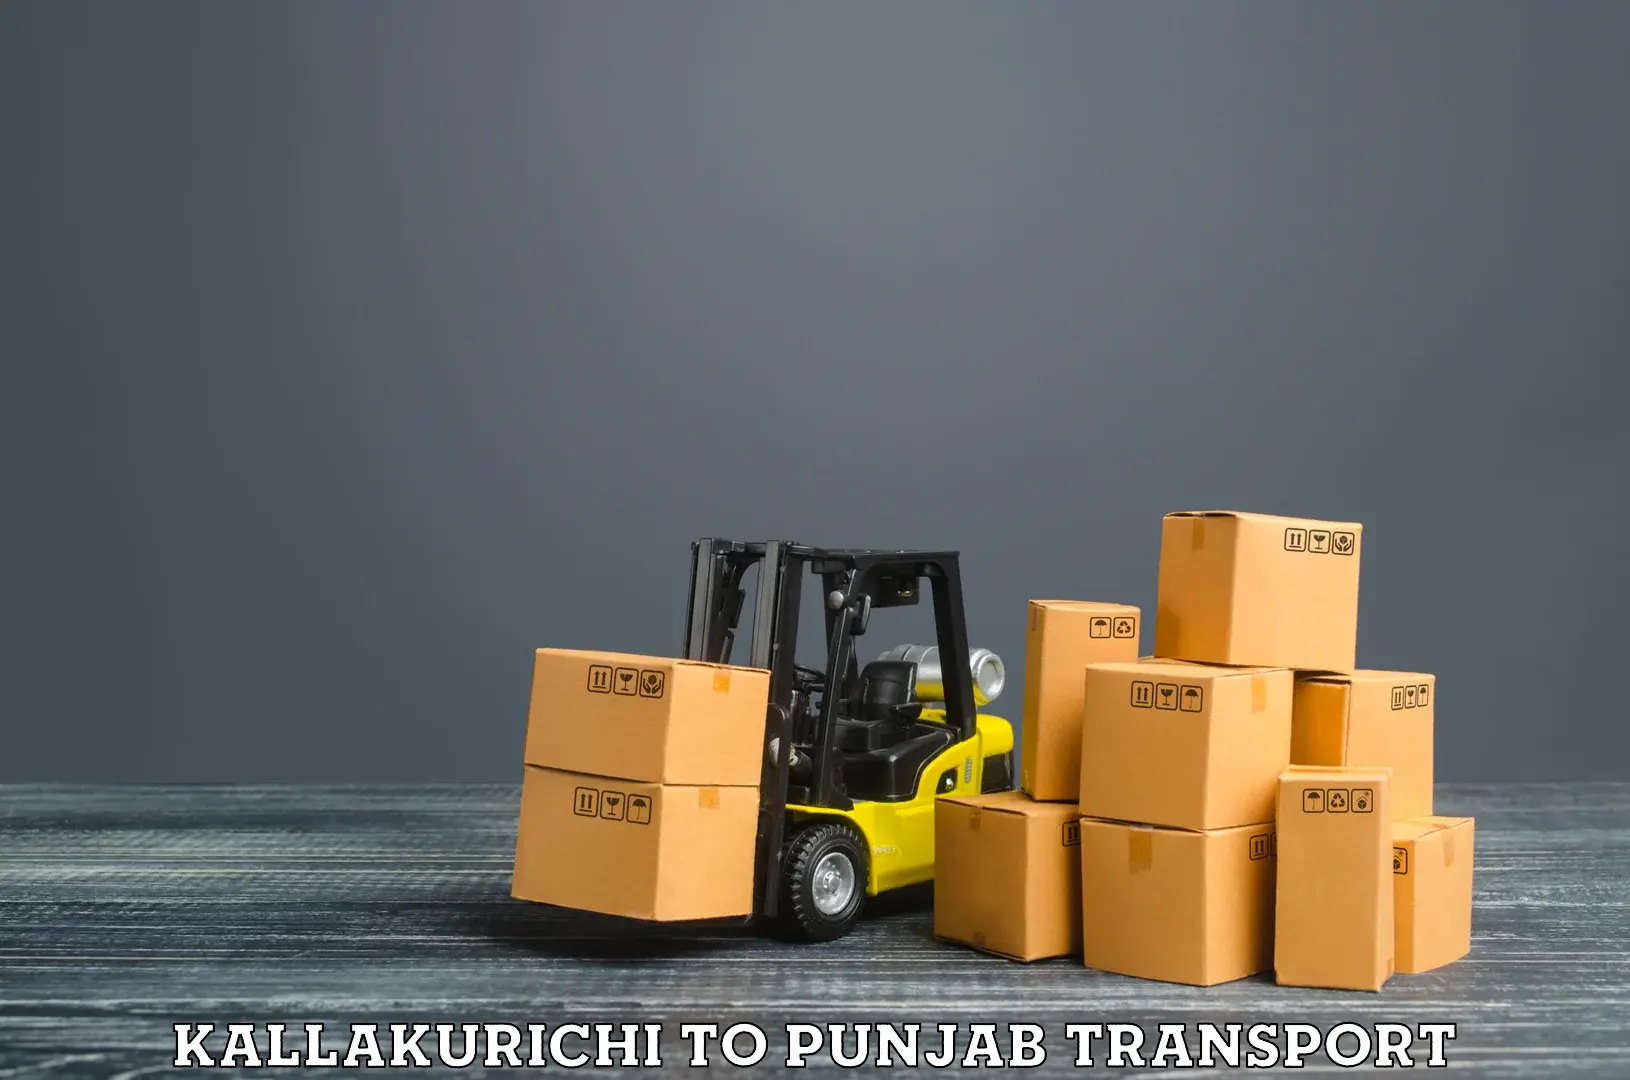 Shipping partner Kallakurichi to Punjab